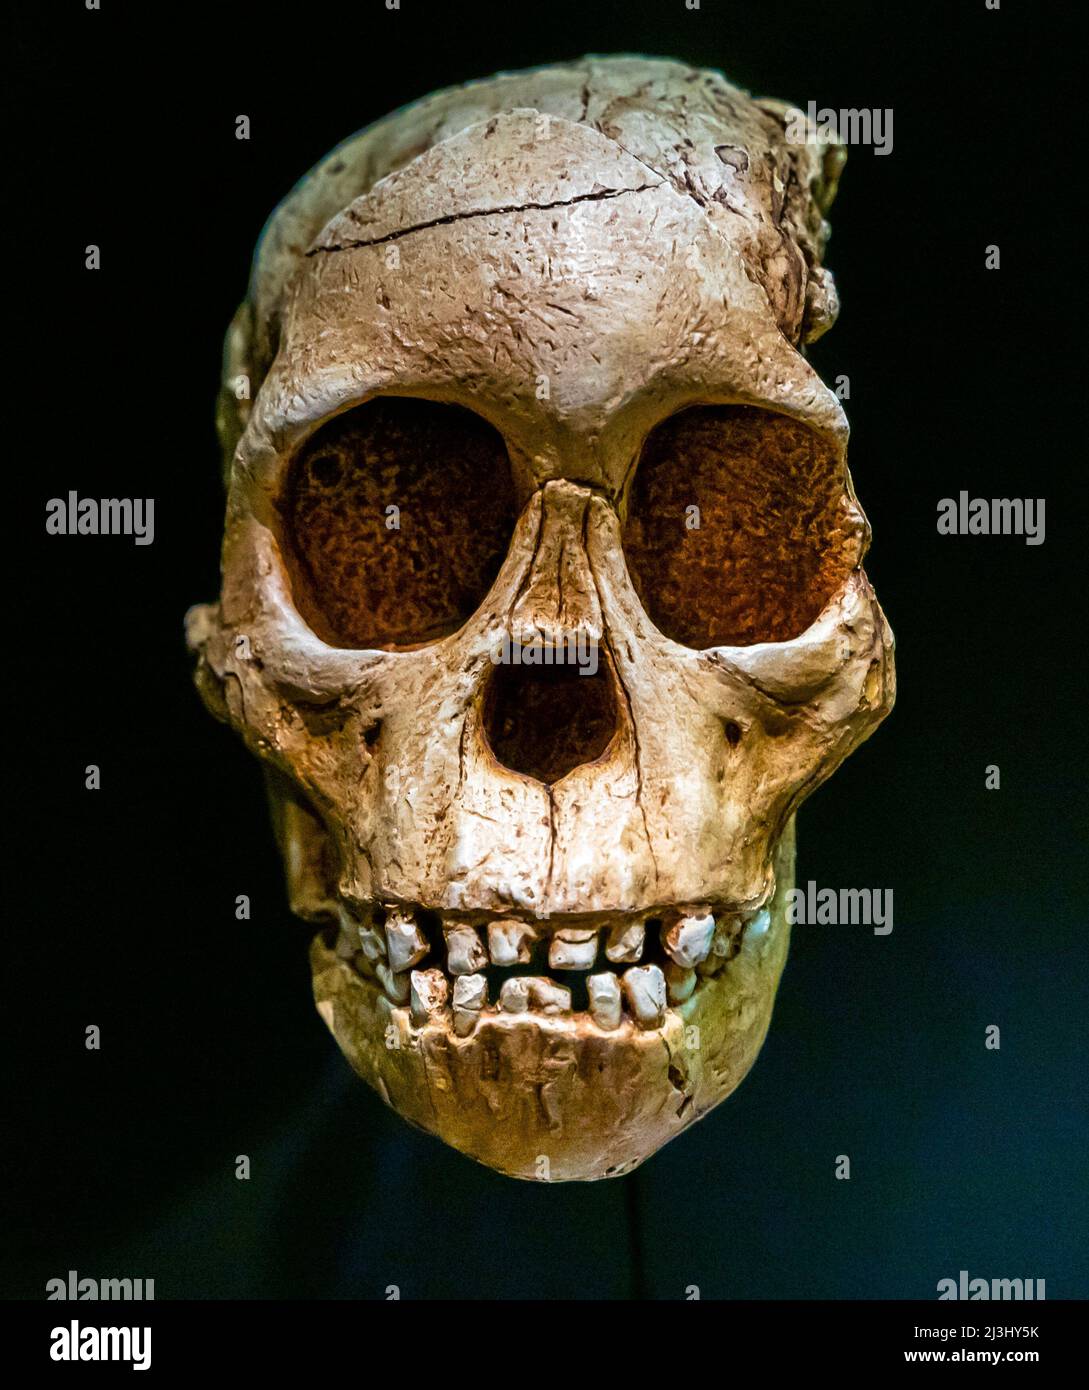 Taung Kinderschädel. Taung Juvenile Cranium, Australopithecus Africanus, vor 2,3 Millionen Jahren. Südafrika. Replikat. Nationales Archäologisches Museum Stockfoto